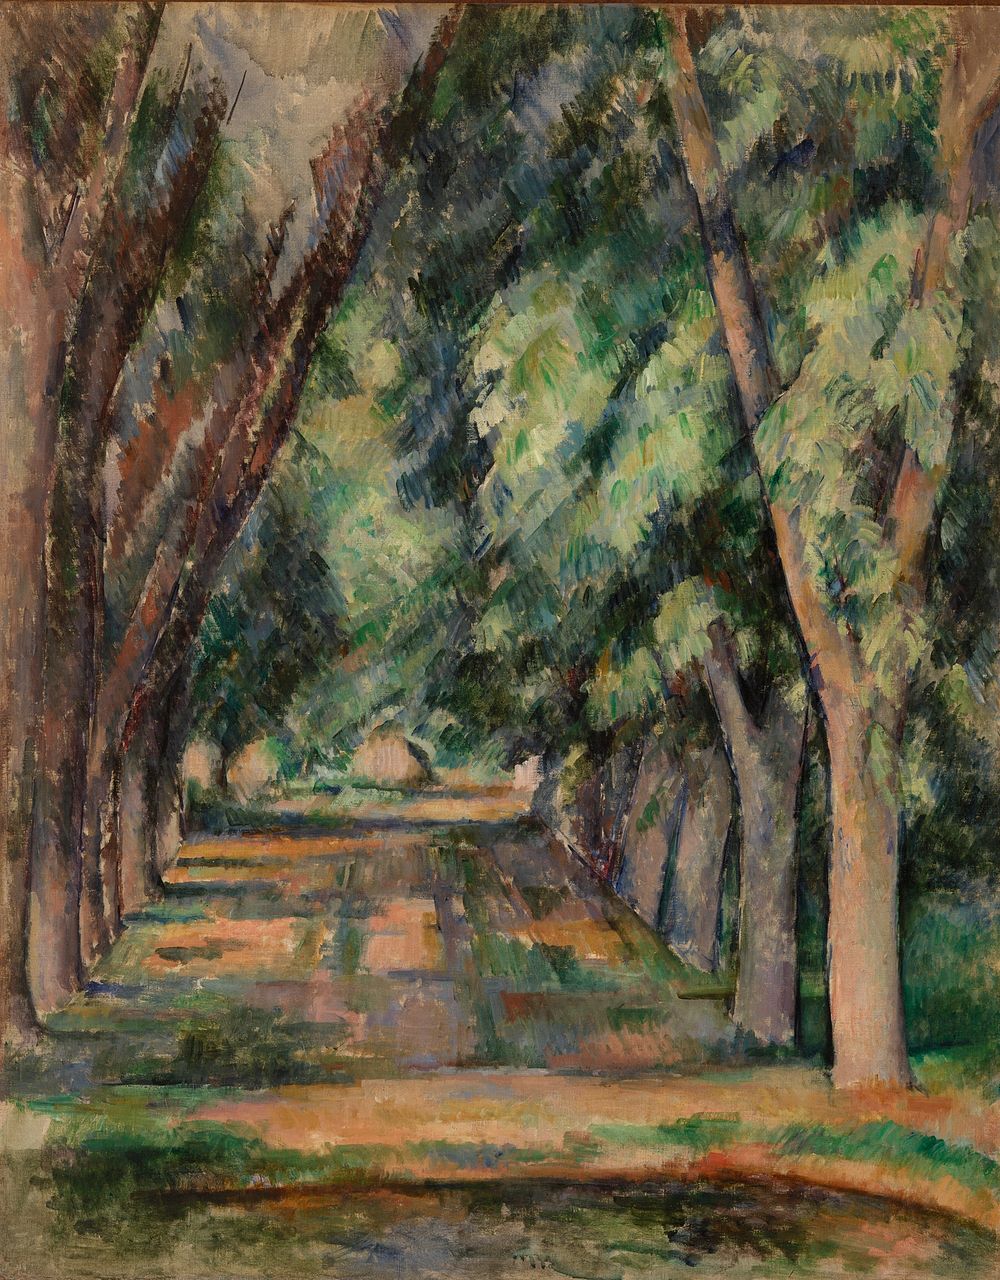 The Allée of Chestnut Trees at the Jas de Bouffan (L'allée des marronniers au Jas de Bouffan) by Paul Cézanne